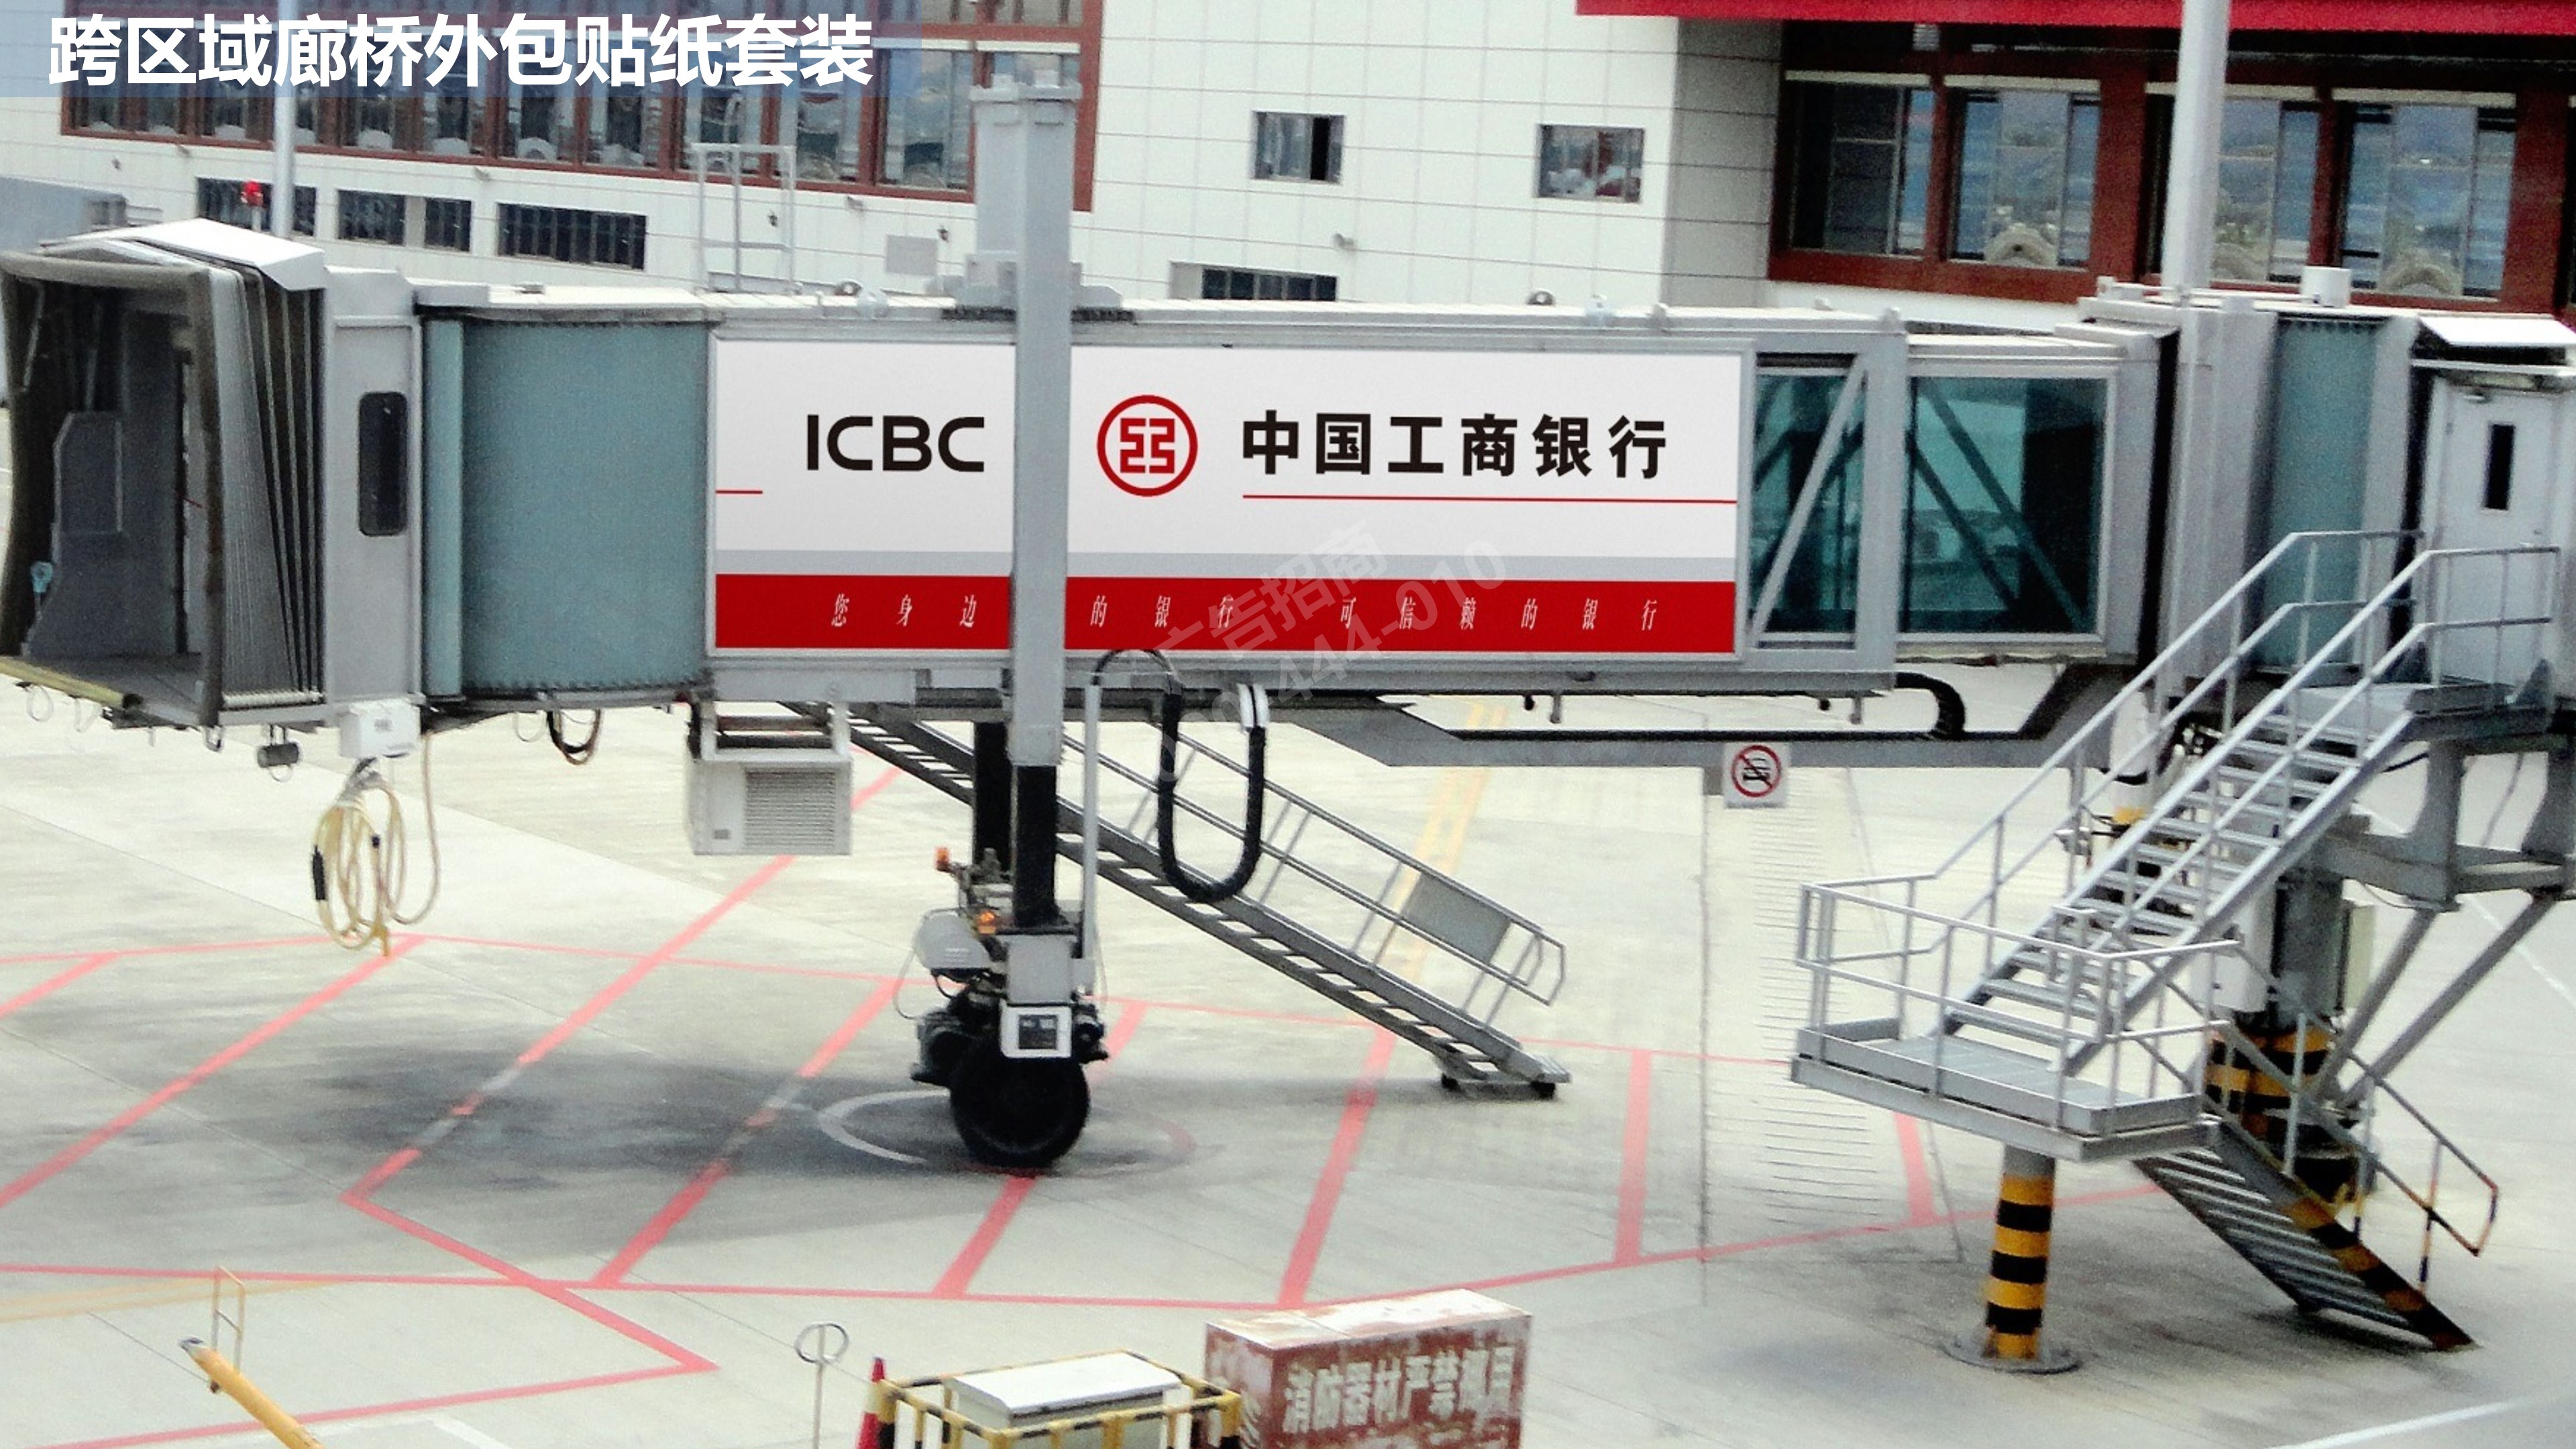 丽江机场跨区域廊桥广告